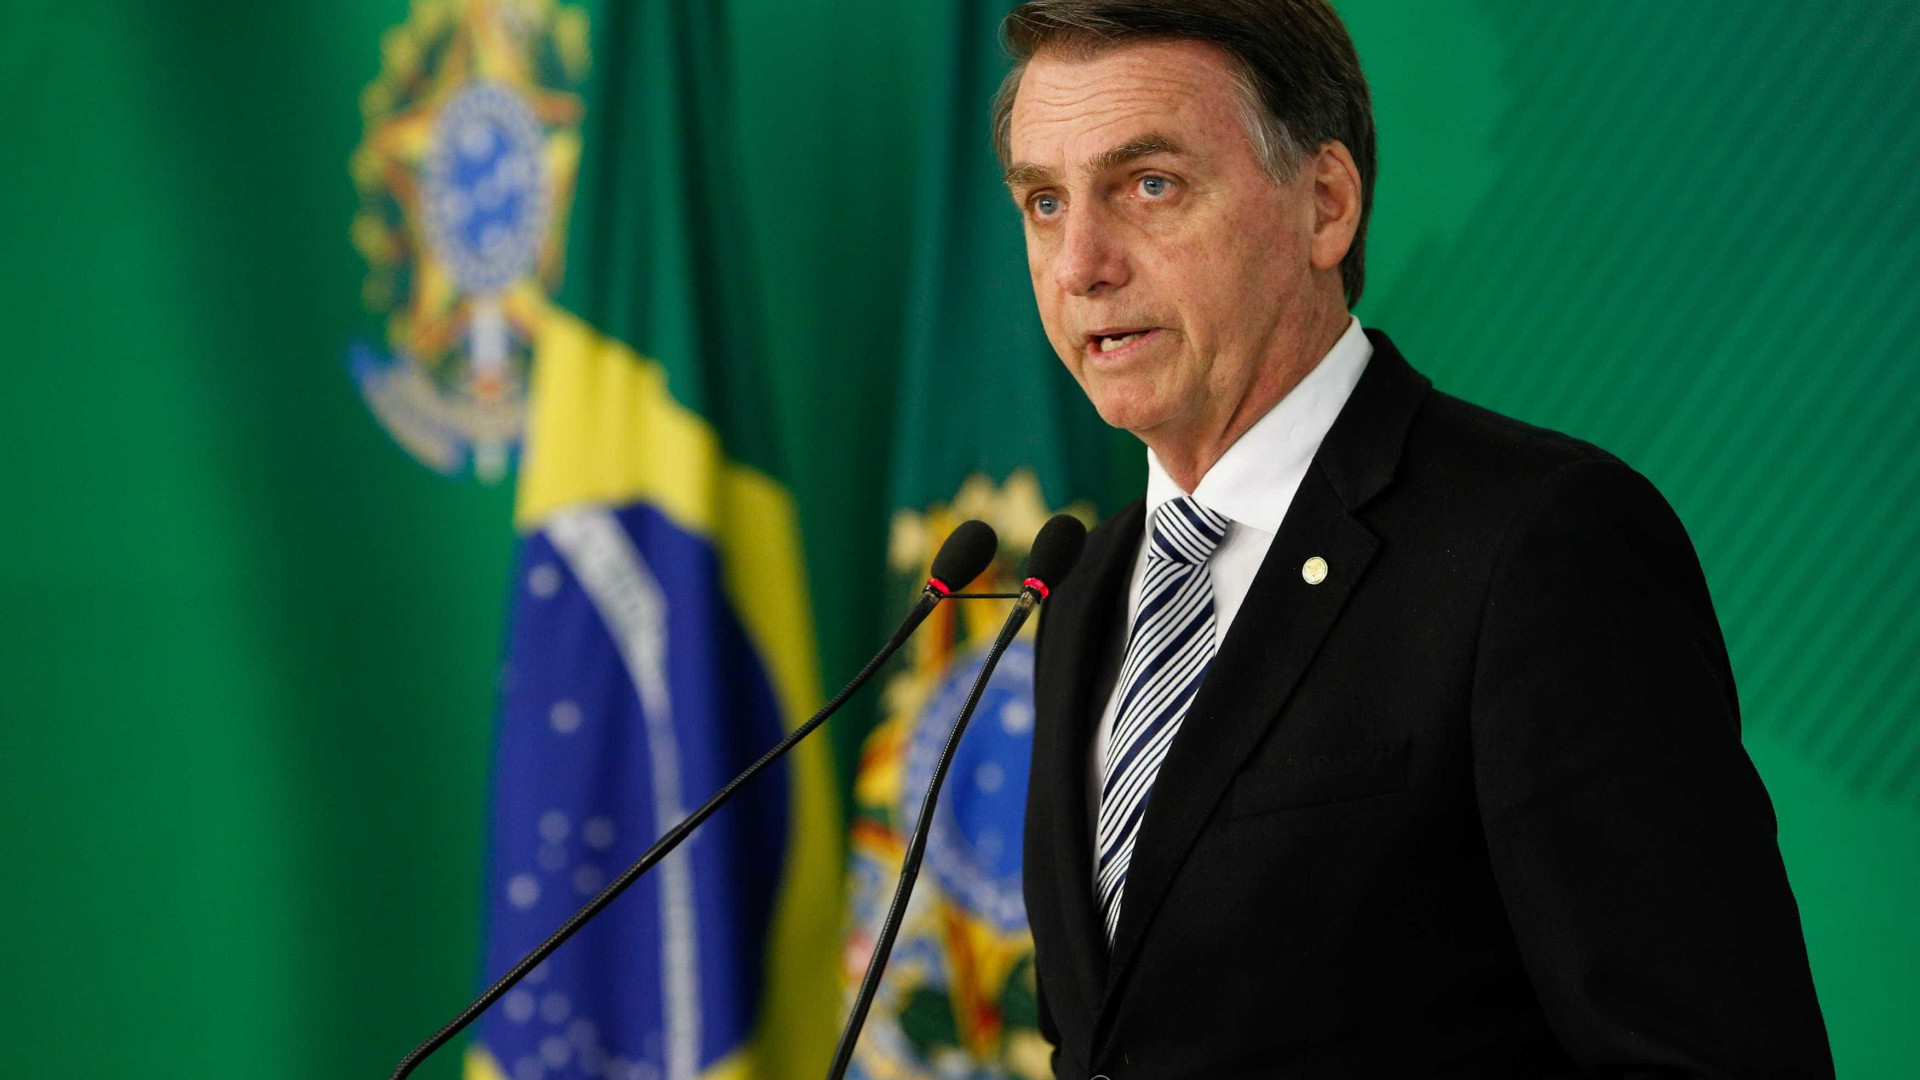 Bolsa fecha na máxima histórica em 1º pregão de governo Bolsonaro